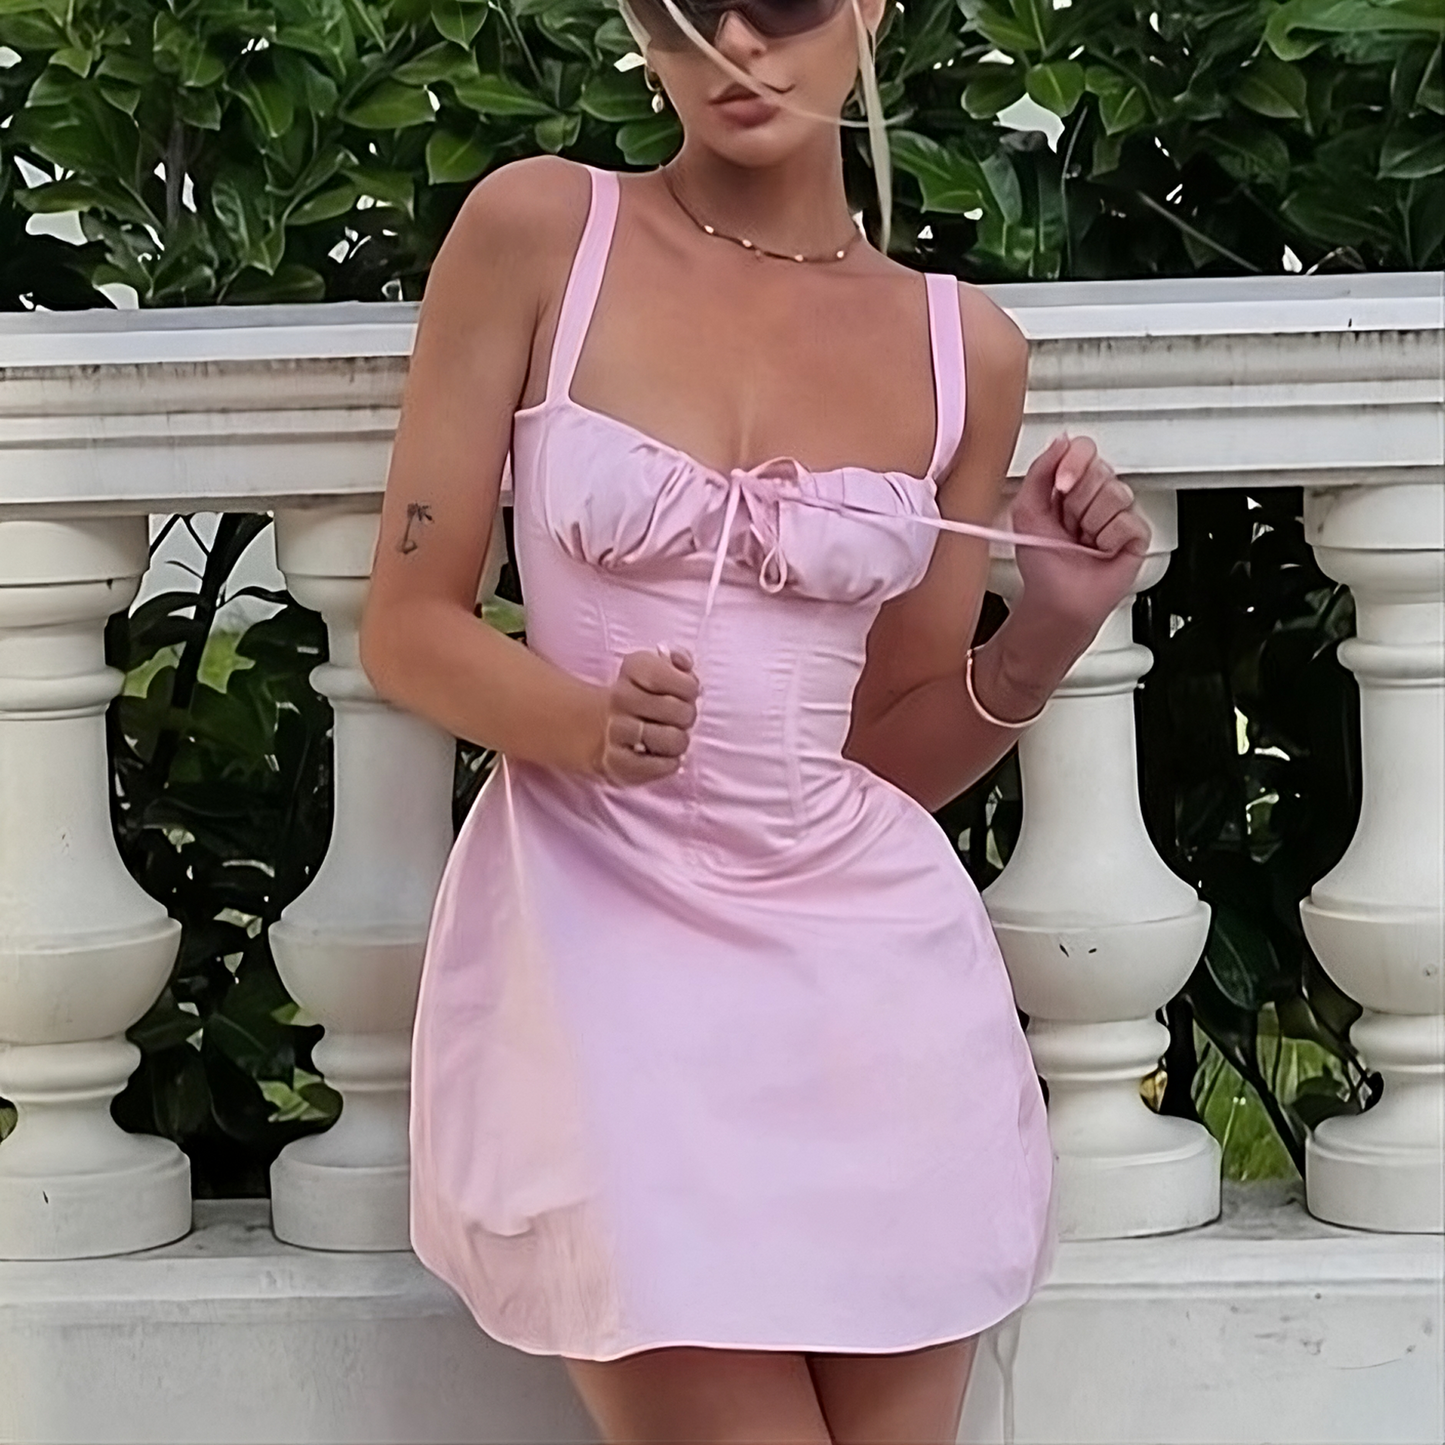 Pink Lace Up Corset Mini Dress